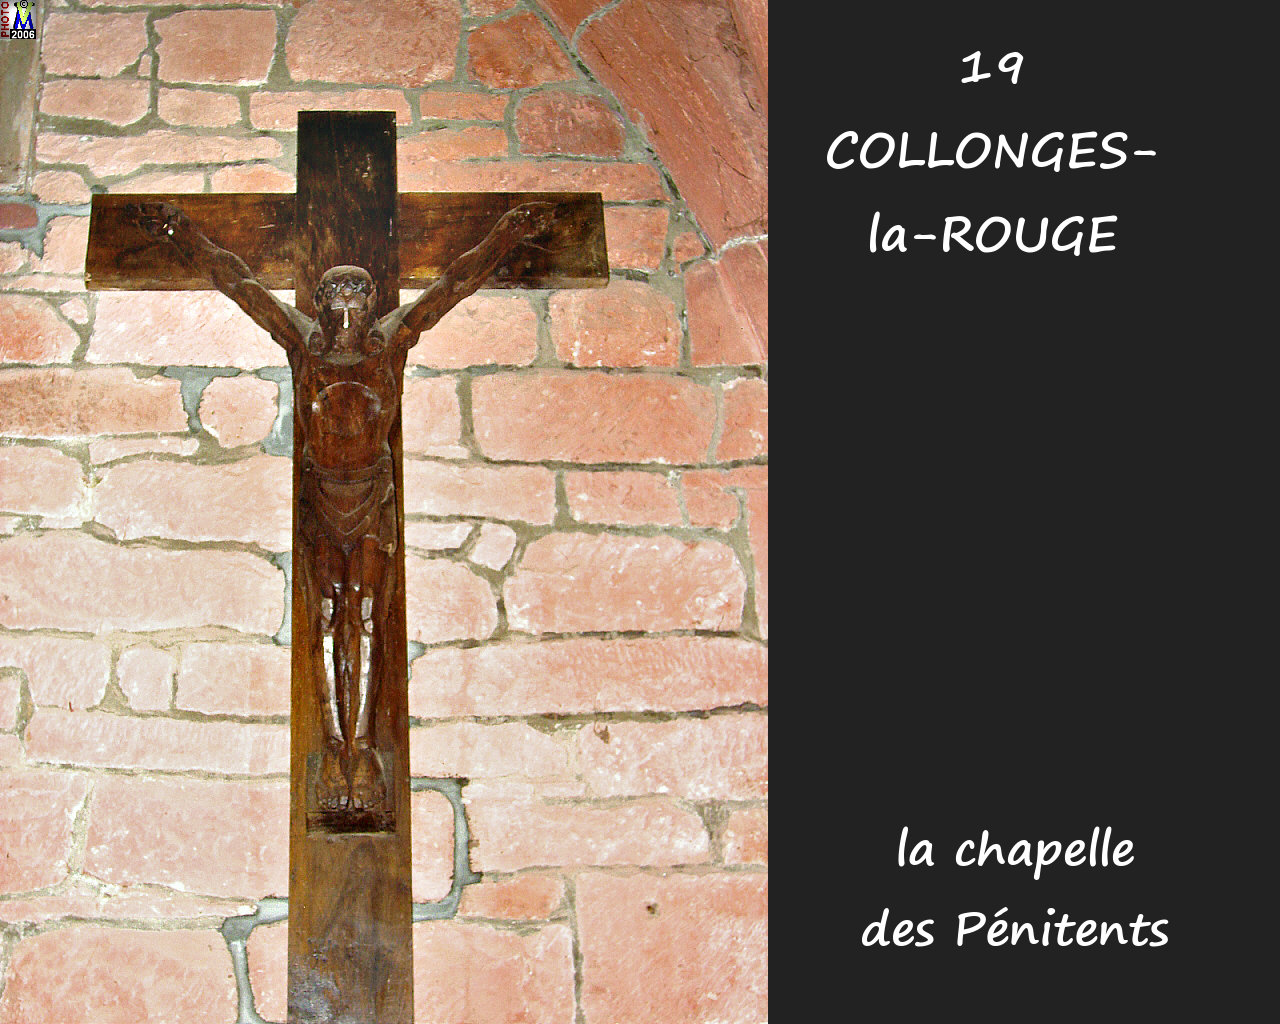 19COLLONGES-ROUGE_chapelle_222.jpg